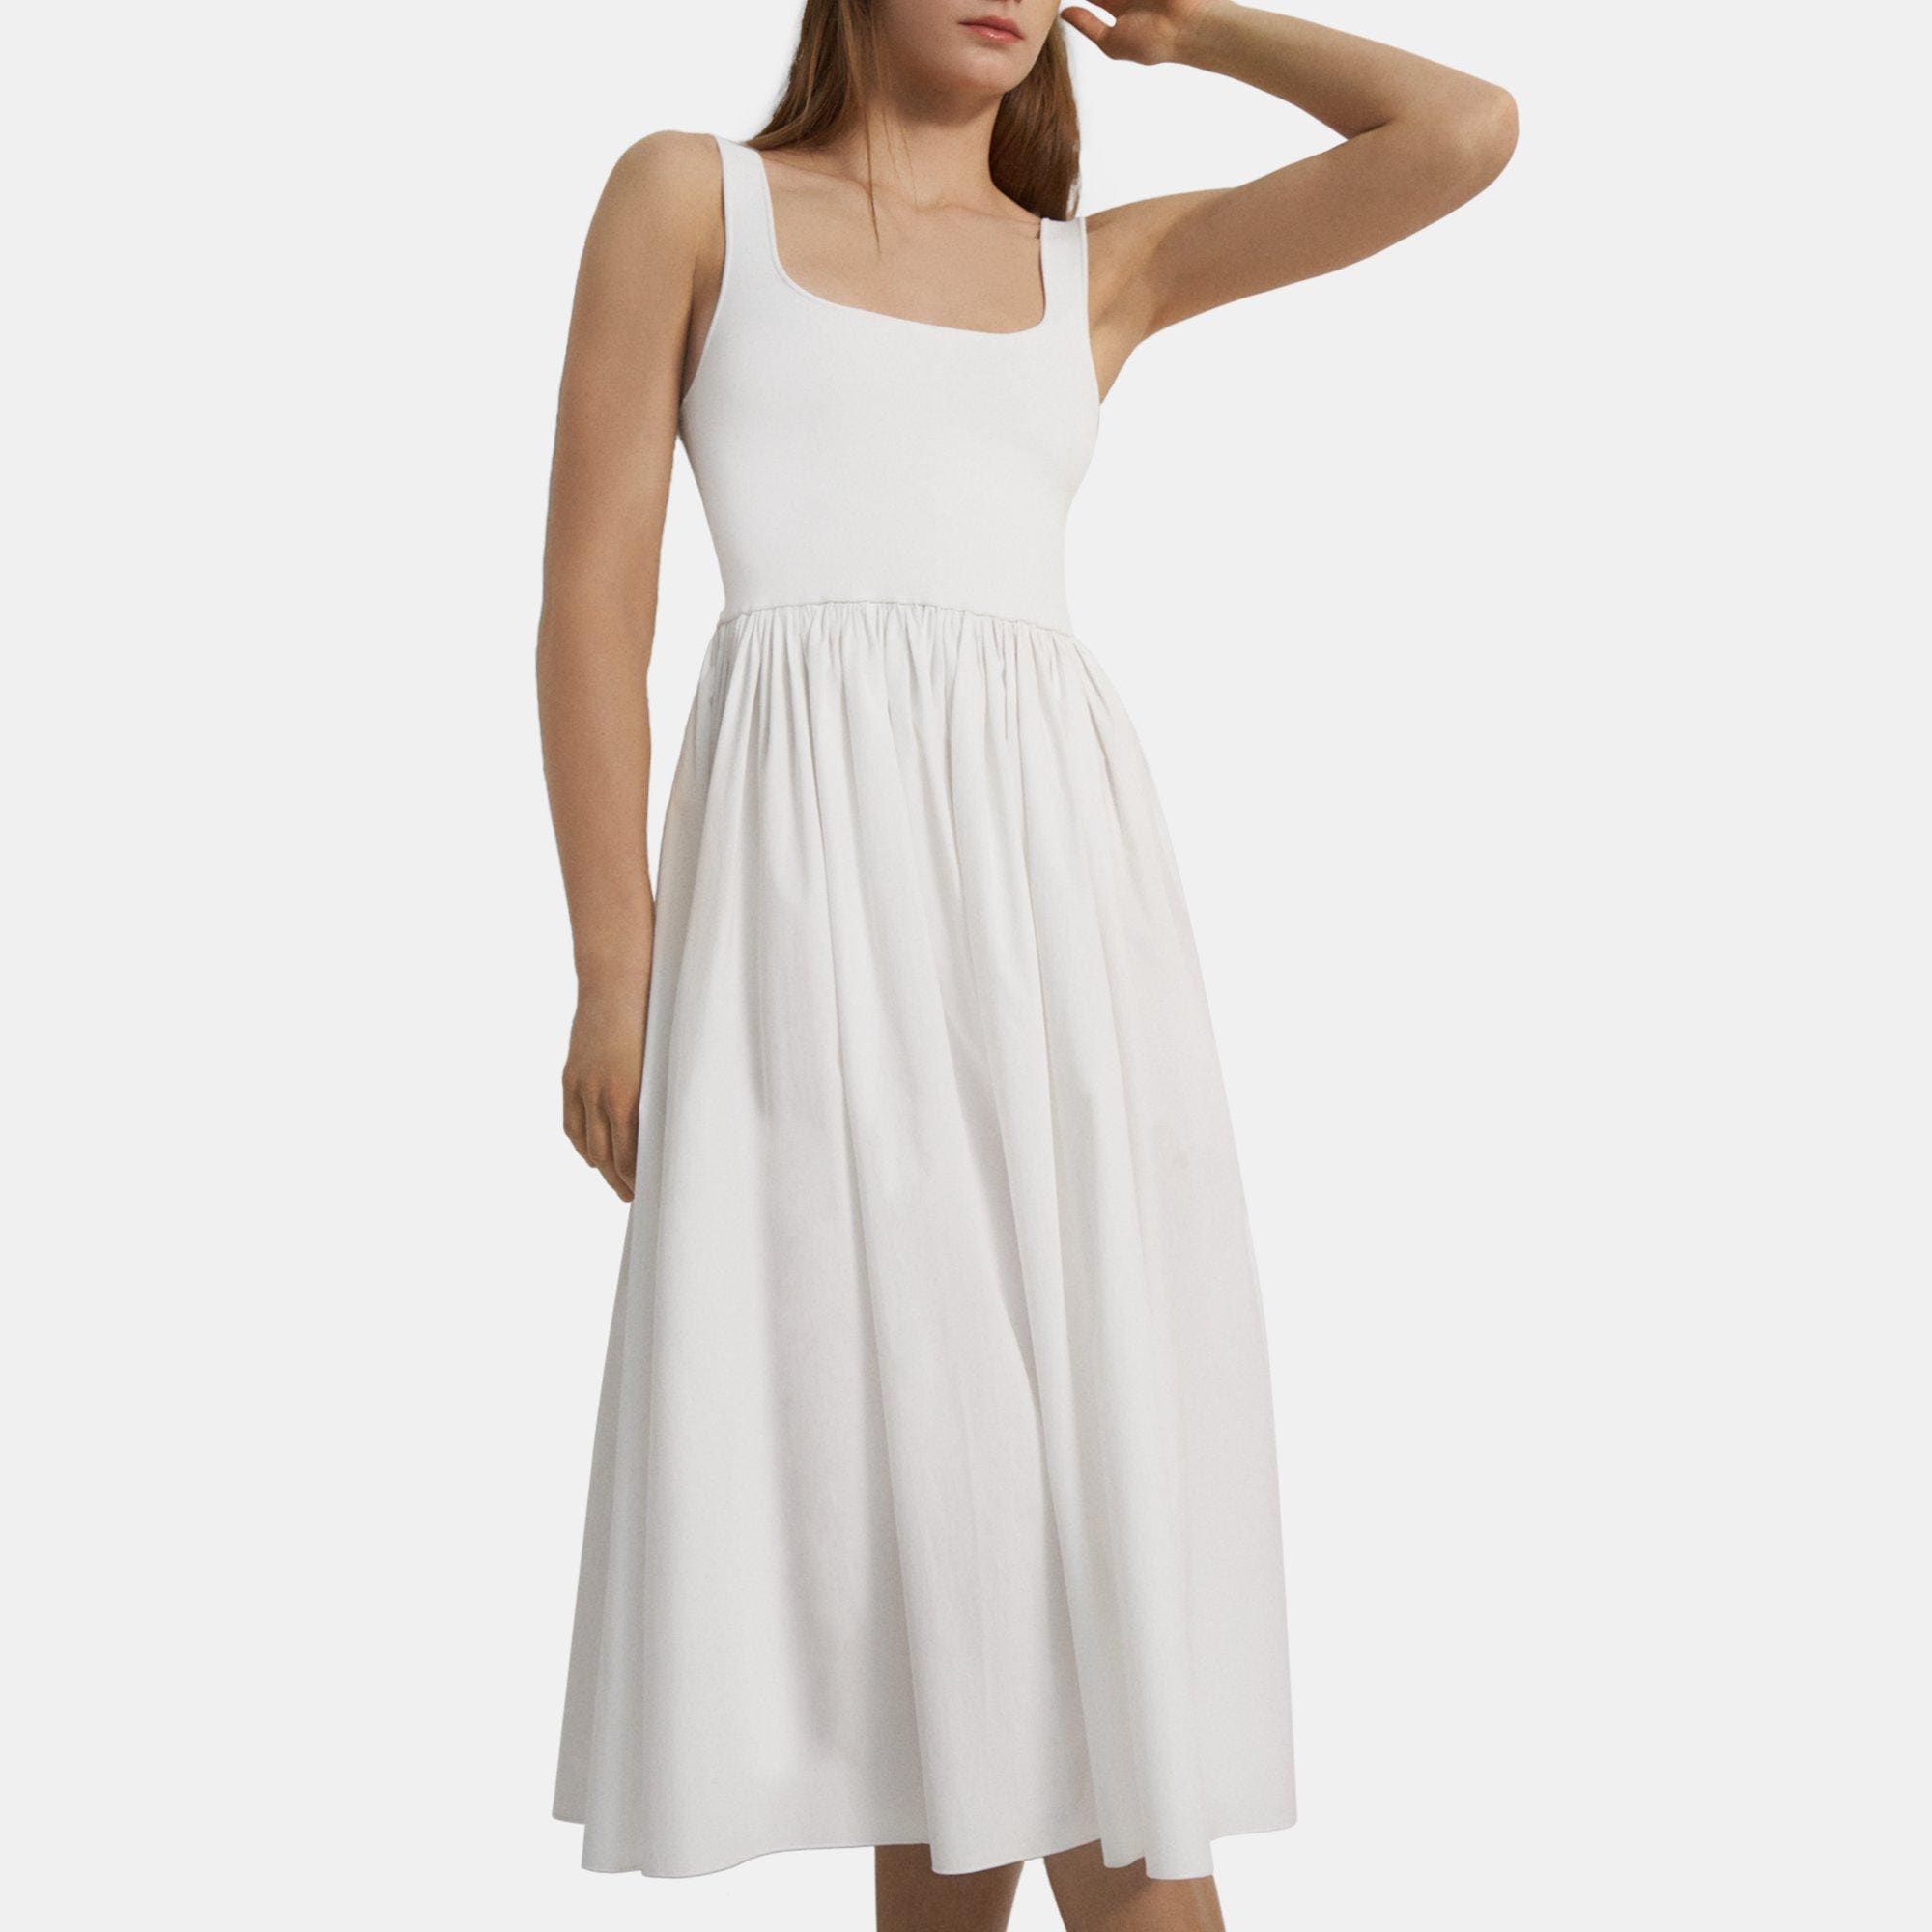 띠어리 Theory Gathered Sleeveless Dress in Stretch Knit,WHITE